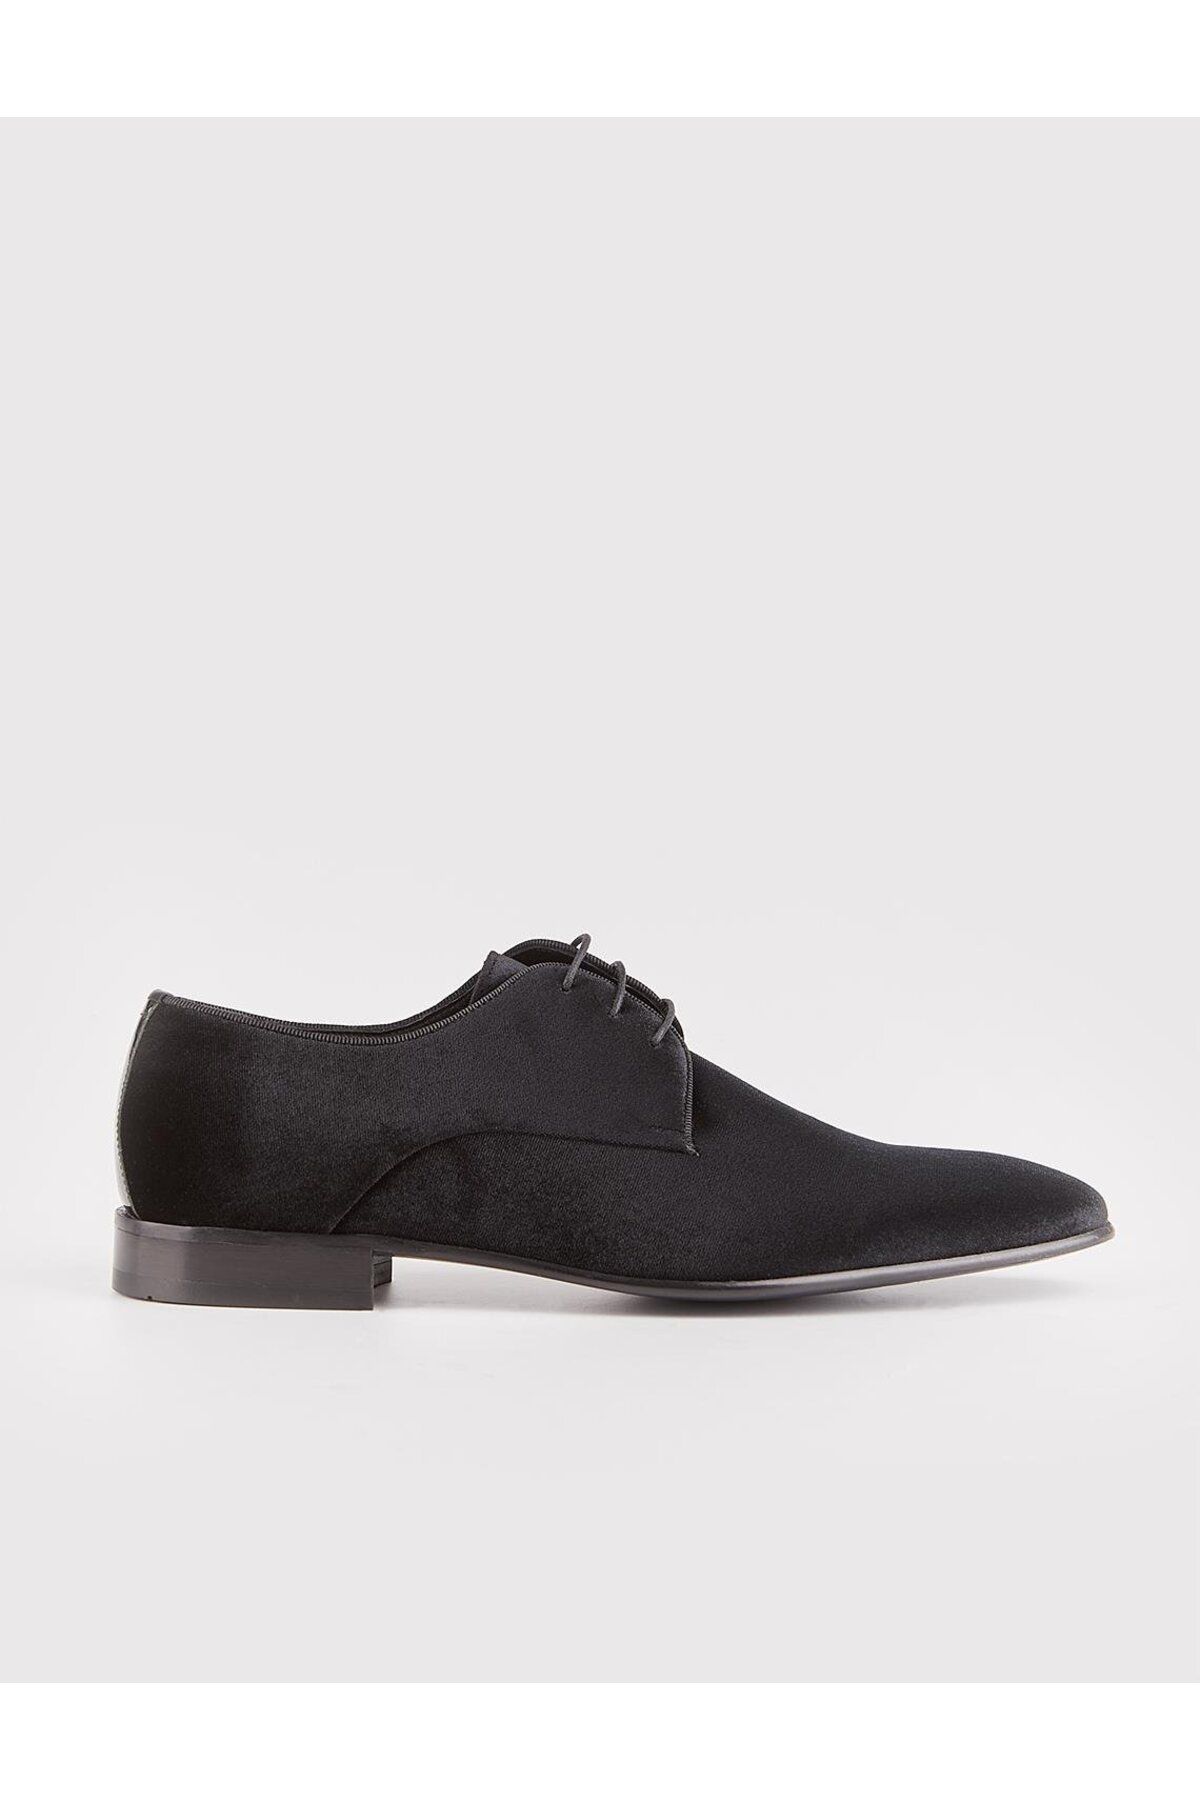 Cabani Siyah Bağcıklı Erkek Klasik Ayakkabı